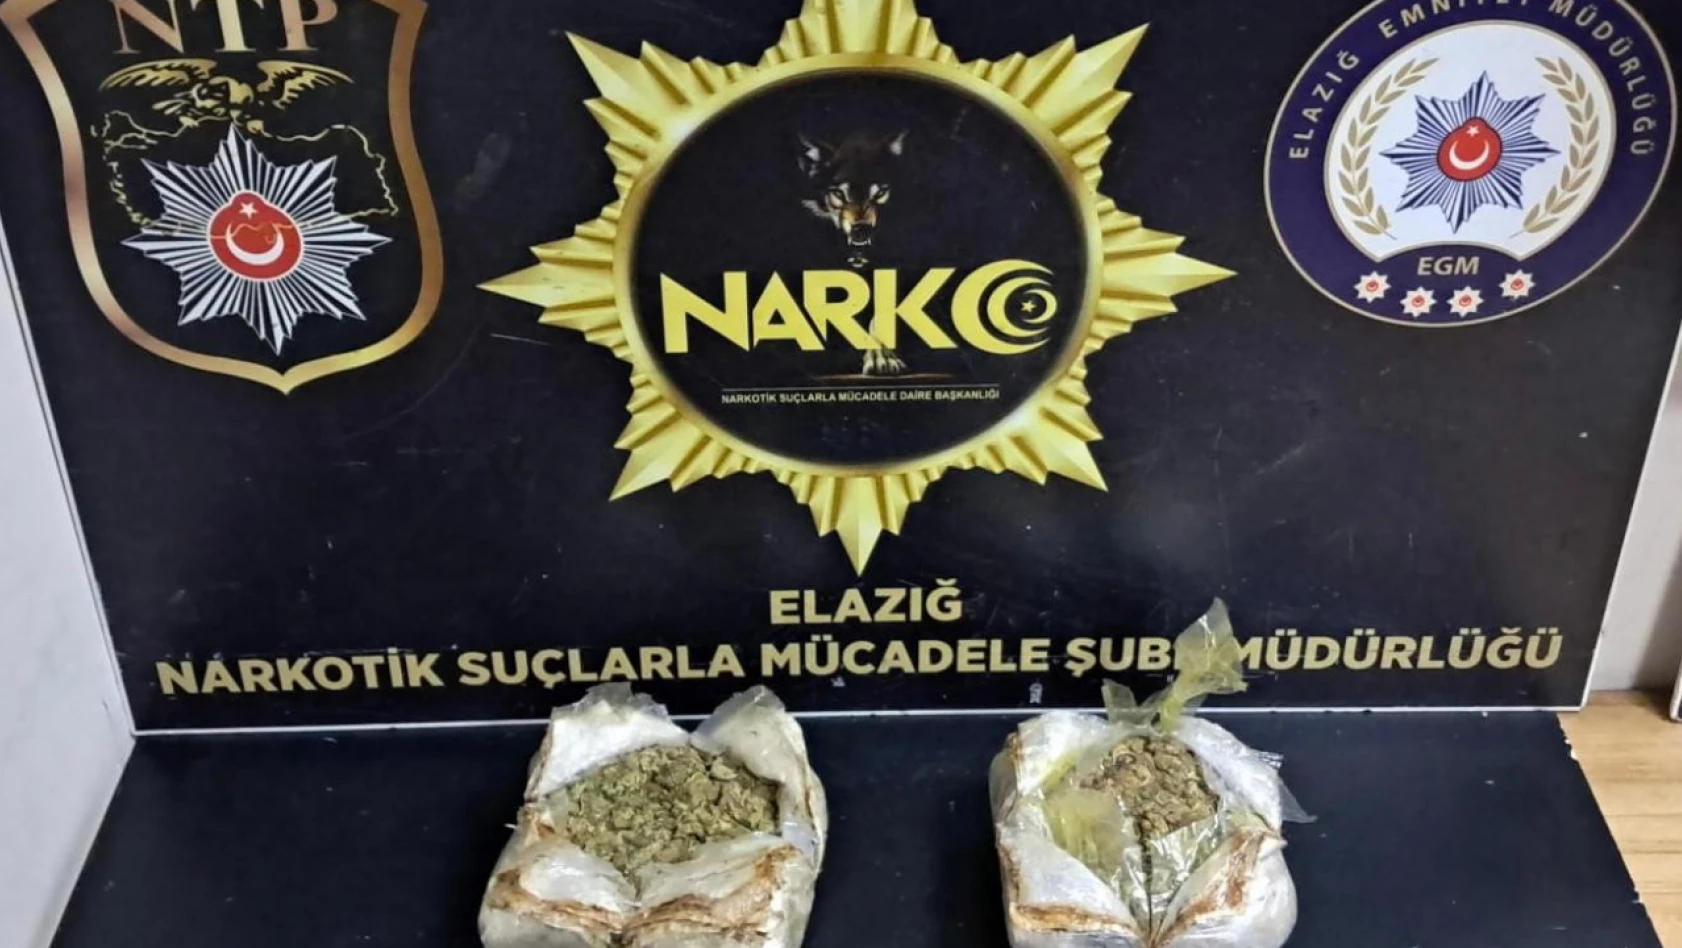 Elazığ'da 1 kilo 292 gram uyuşturucu ele geçirildi: 1 tutuklama